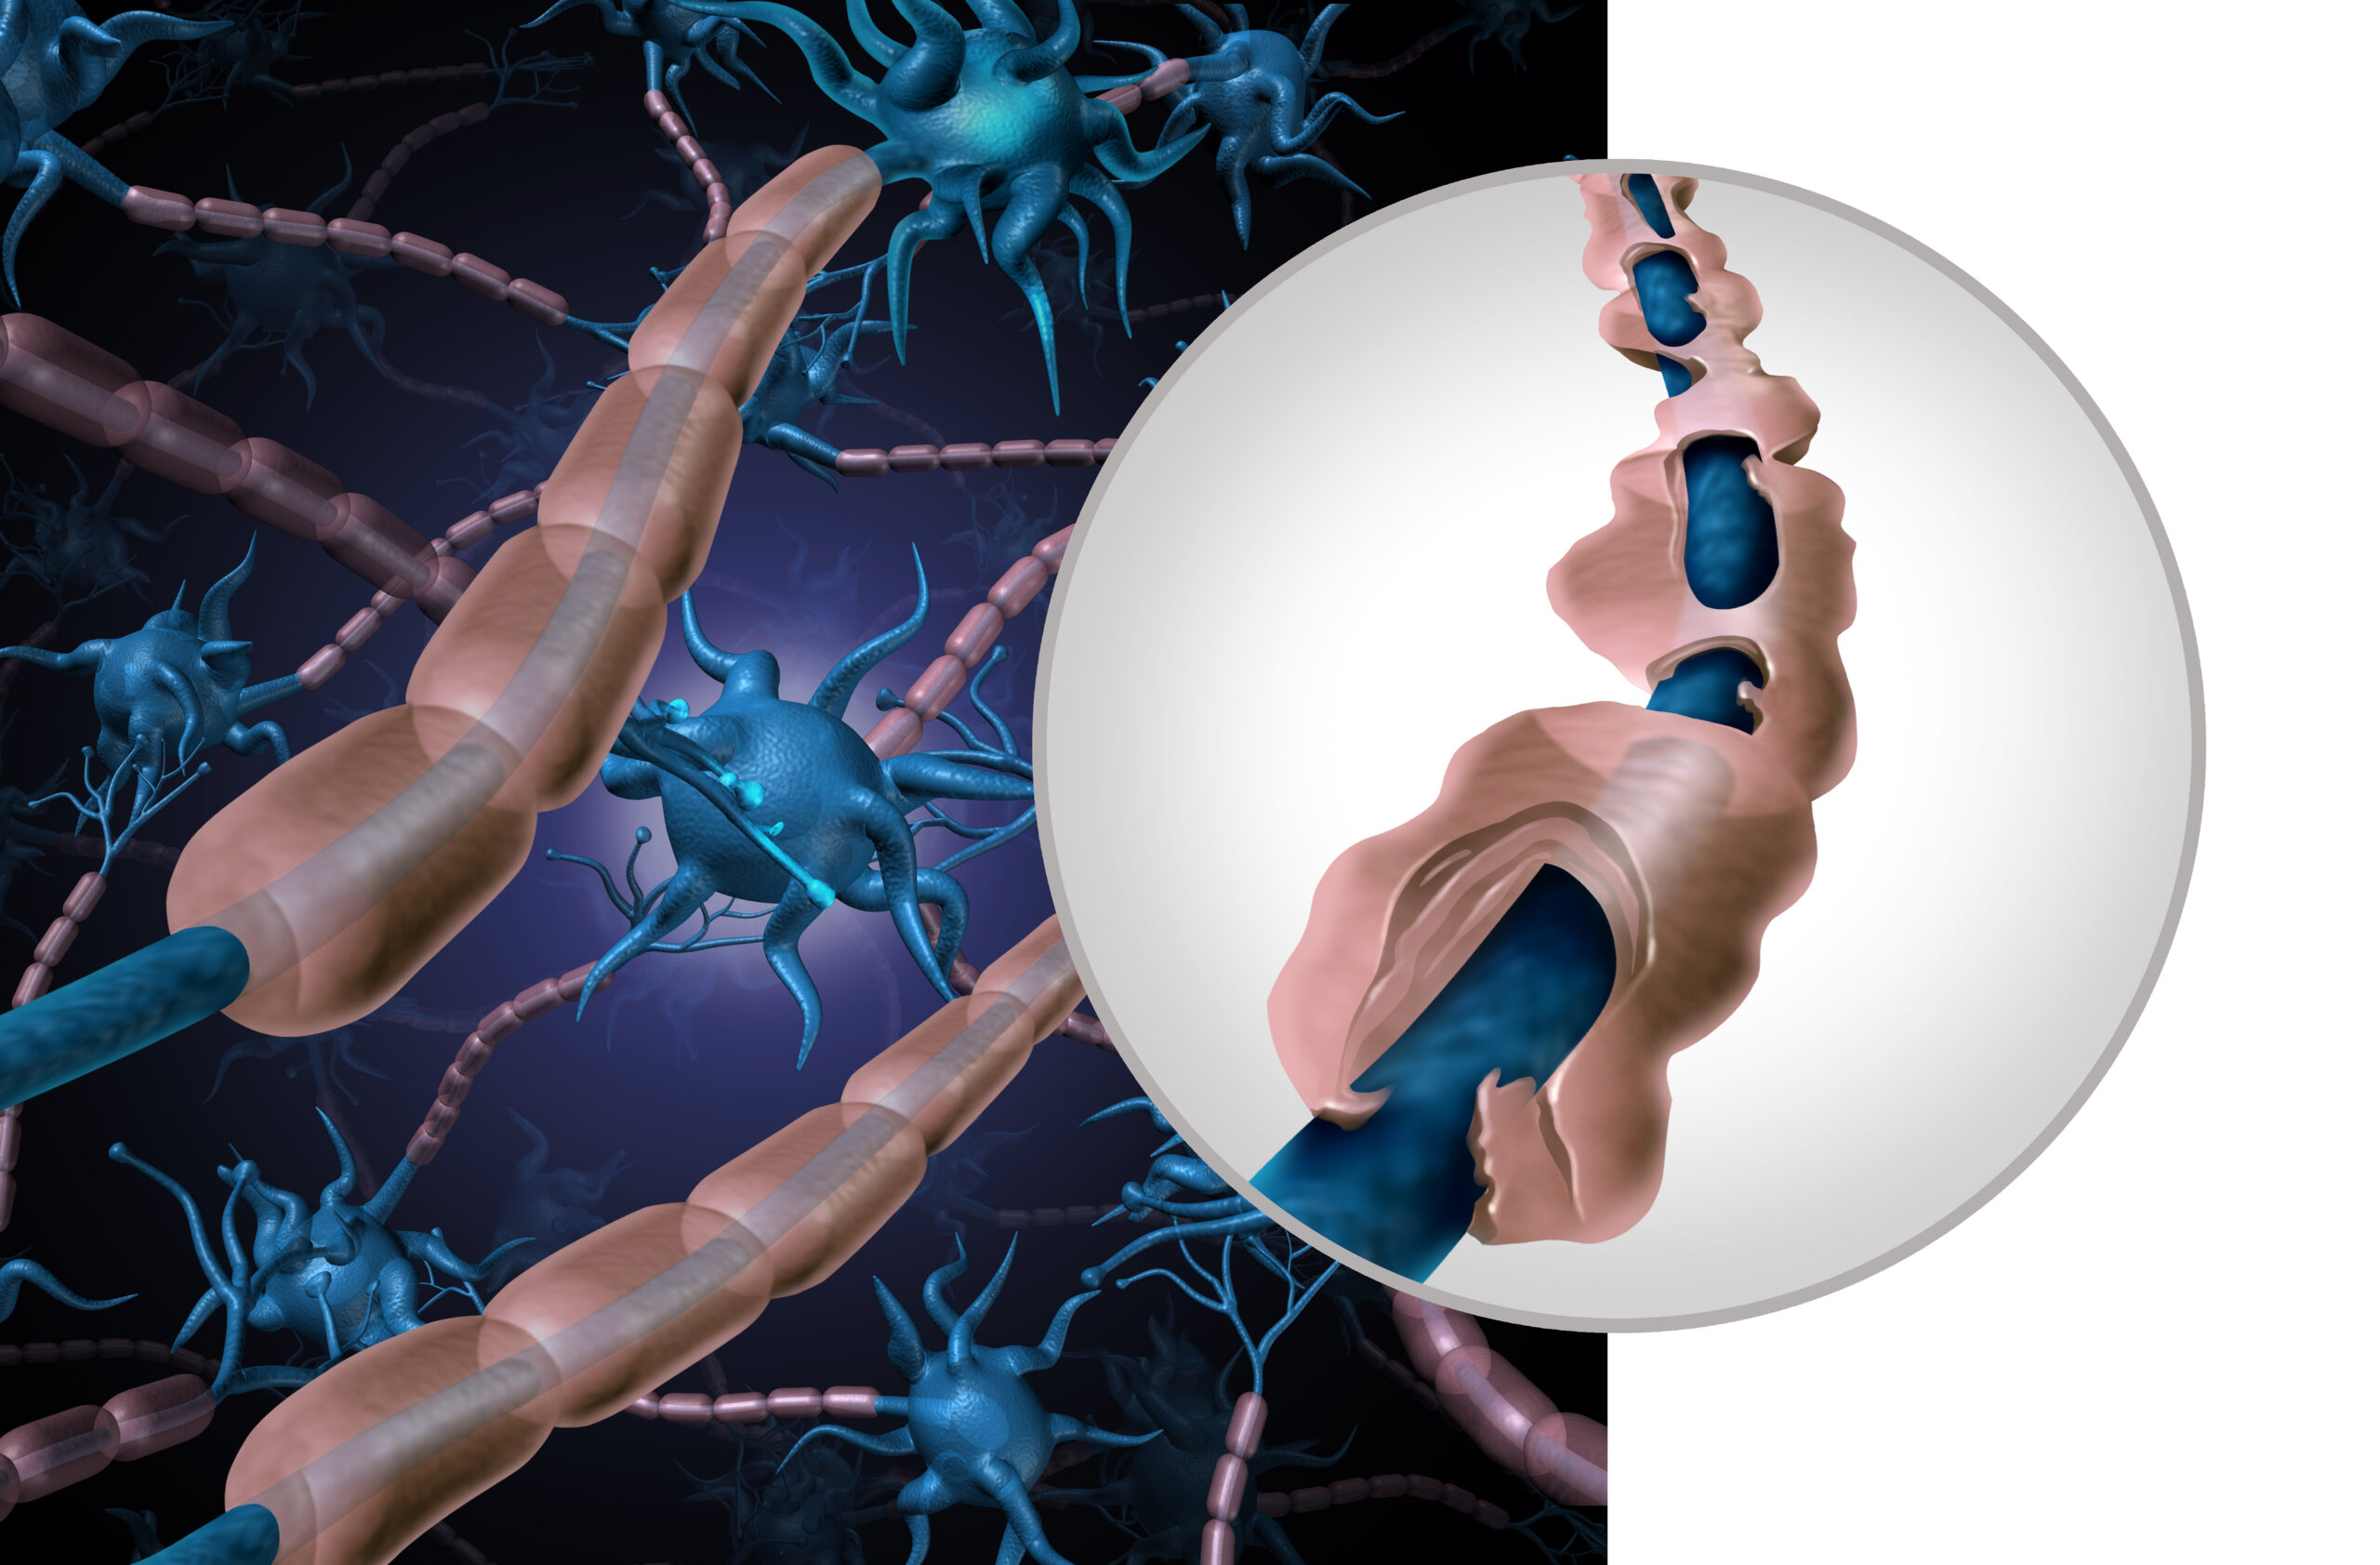 Estudio descubre un método prometedor para tratar la Esclerosis Múltiple: teofilina y remielinización